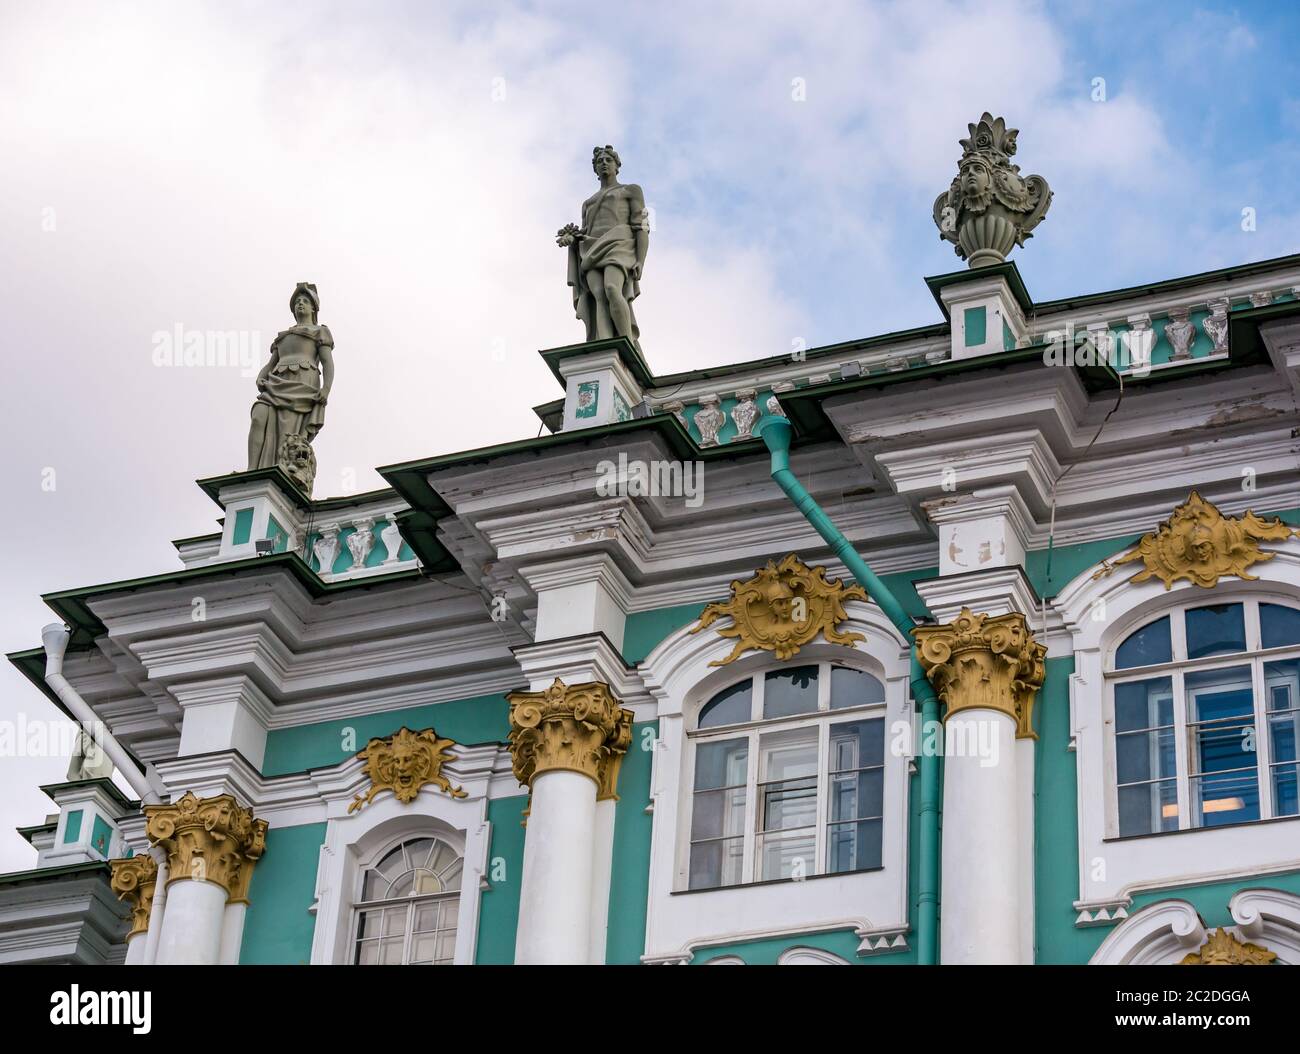 Primo piano dettaglio dell'architettura ornata con sculture classiche del Palazzo d'Inverno, dell'Hermitage, di San Pietroburgo, della Russia Foto Stock